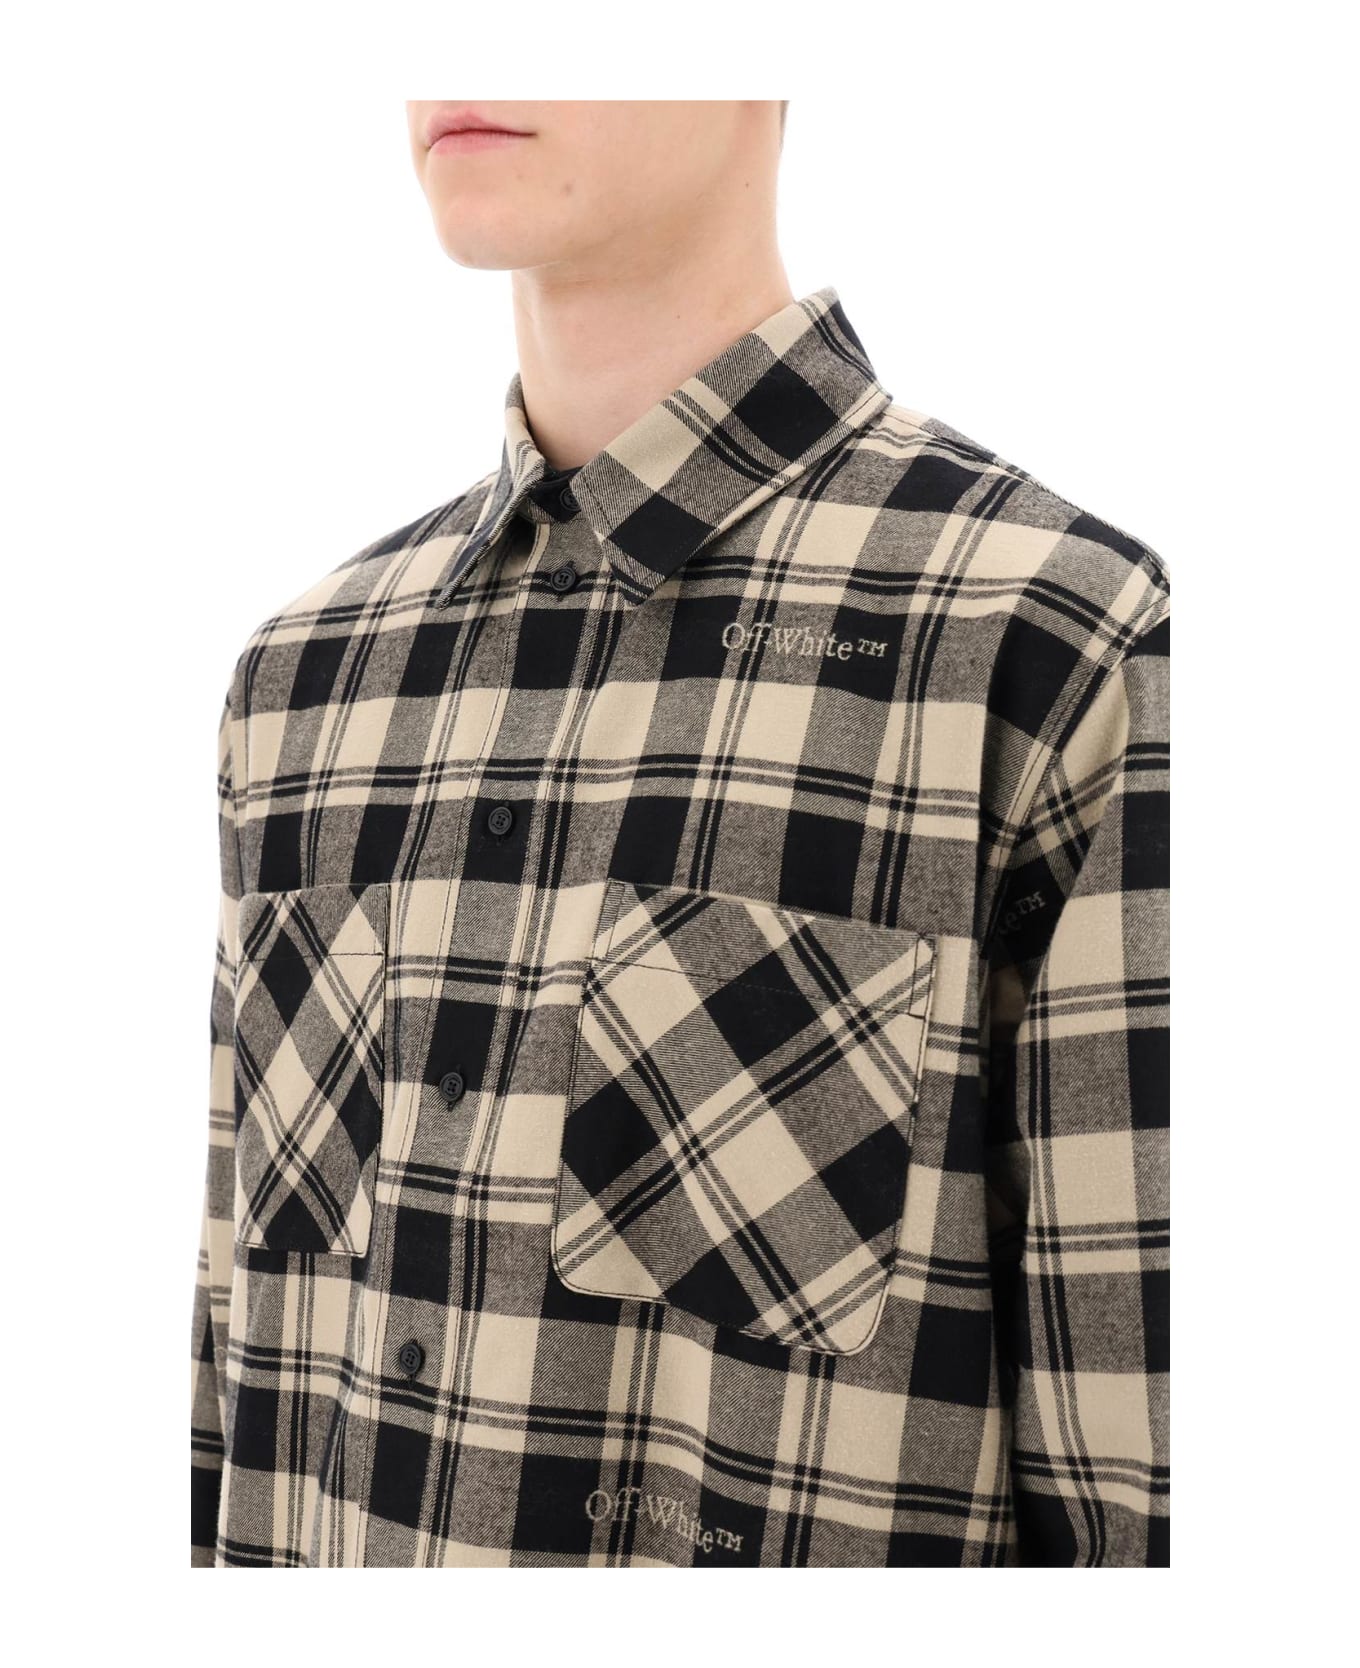 Off-White Check Flannel Shirt - BEIGE BLACK (Beige)